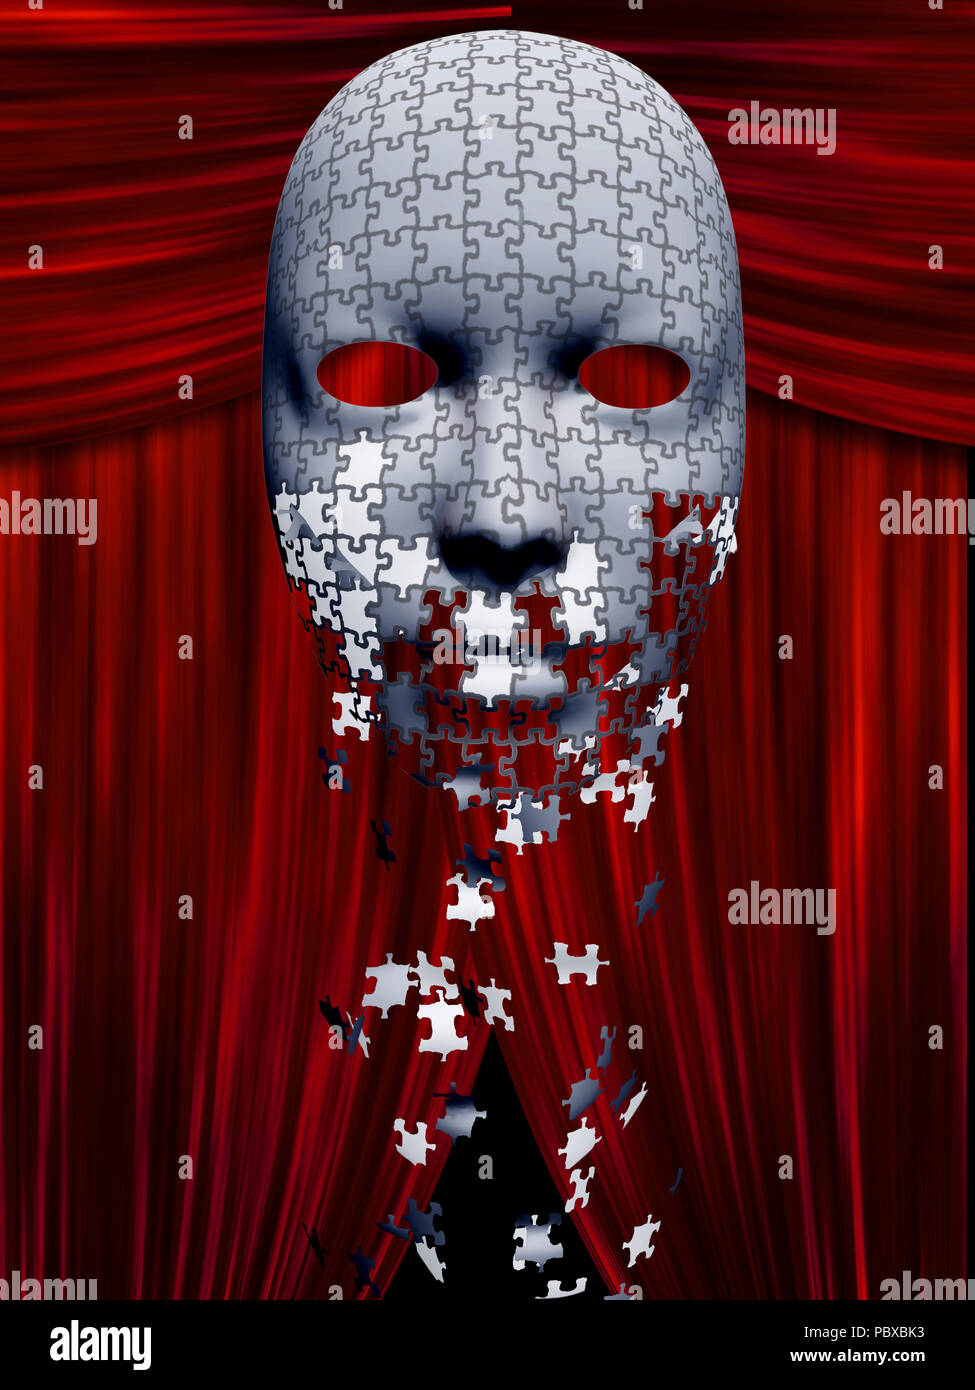 Puzzleteile fallen weg von Maske in Theater Hintergrund mit roten Vorhängen Stockfoto